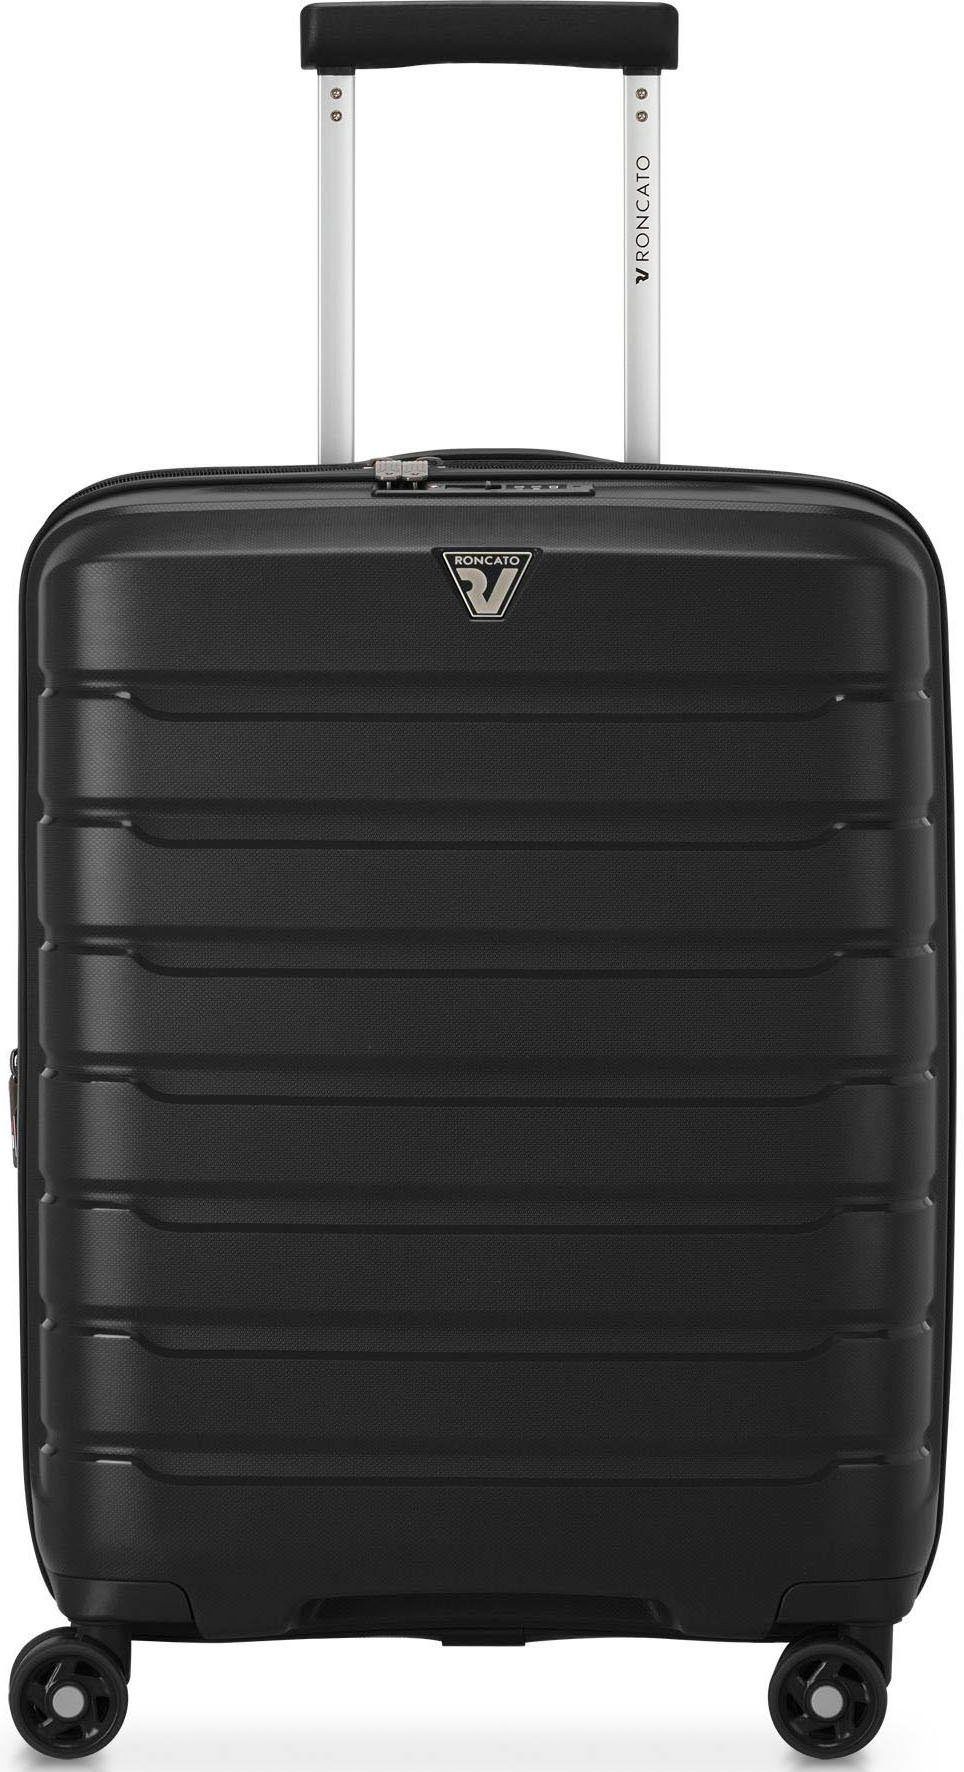 RONCATO Hartschalen-Trolley B-FLYING Carry-on, 55 cm, schwarz, 4 Rollen, Handgepäck-Koffer Reisekoffer mit Volumenerweiterung und TSA Schloss